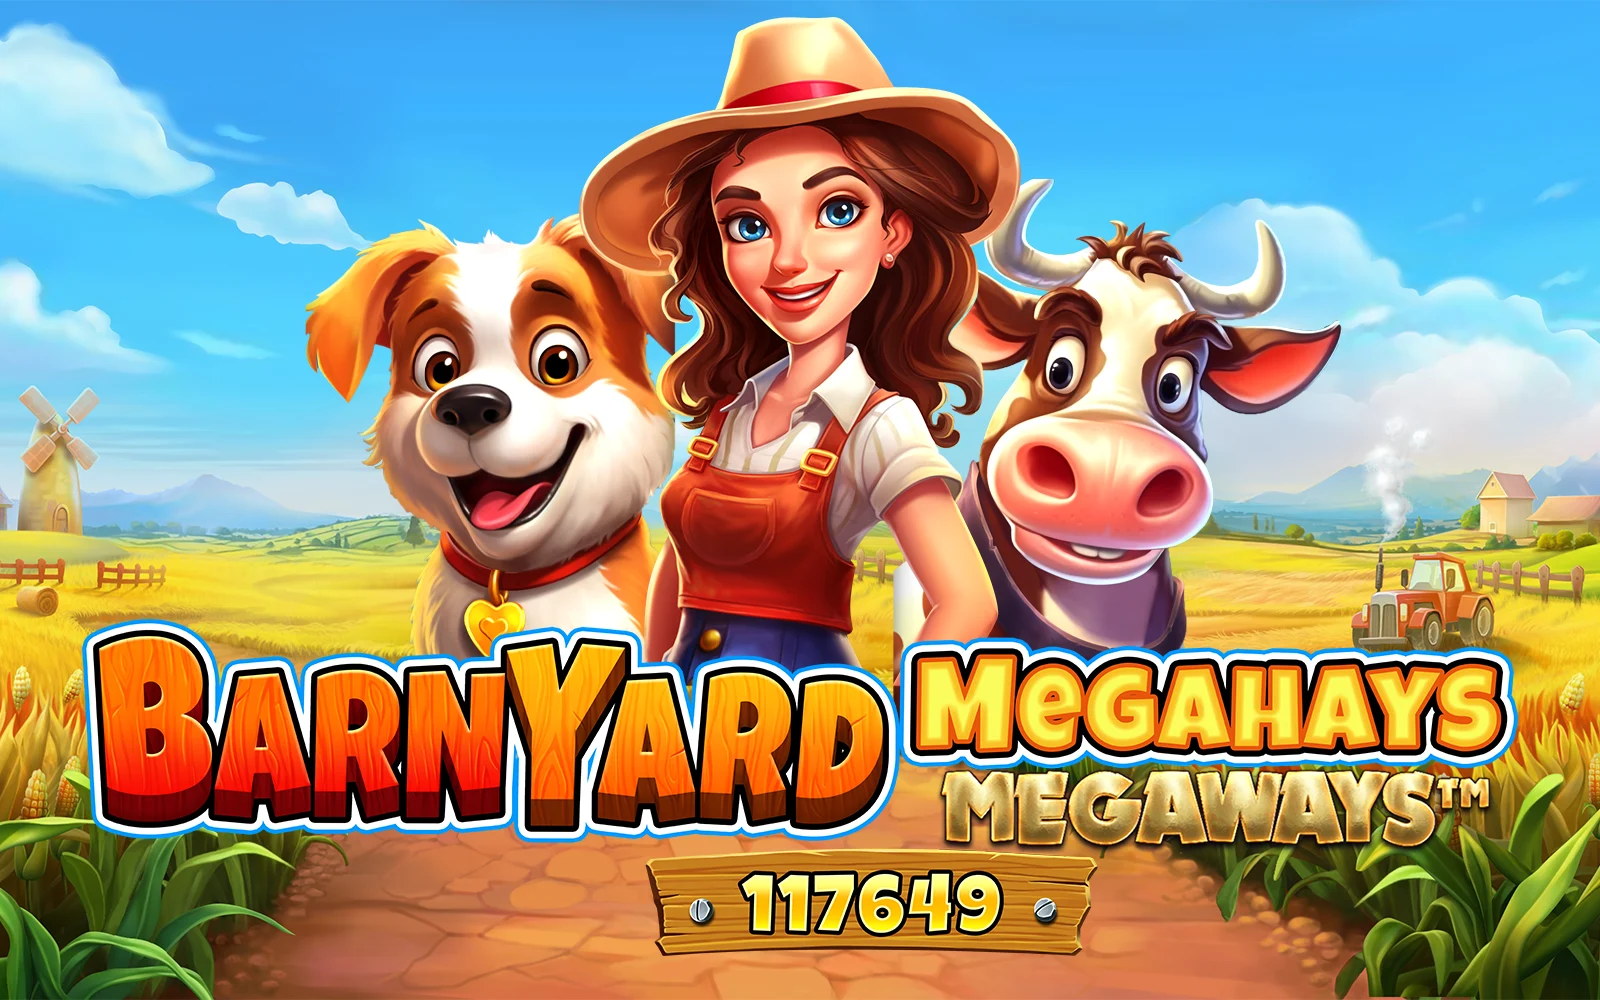 Luaj Barnyard Megahays Megaways™ në kazino Starcasino.be në internet